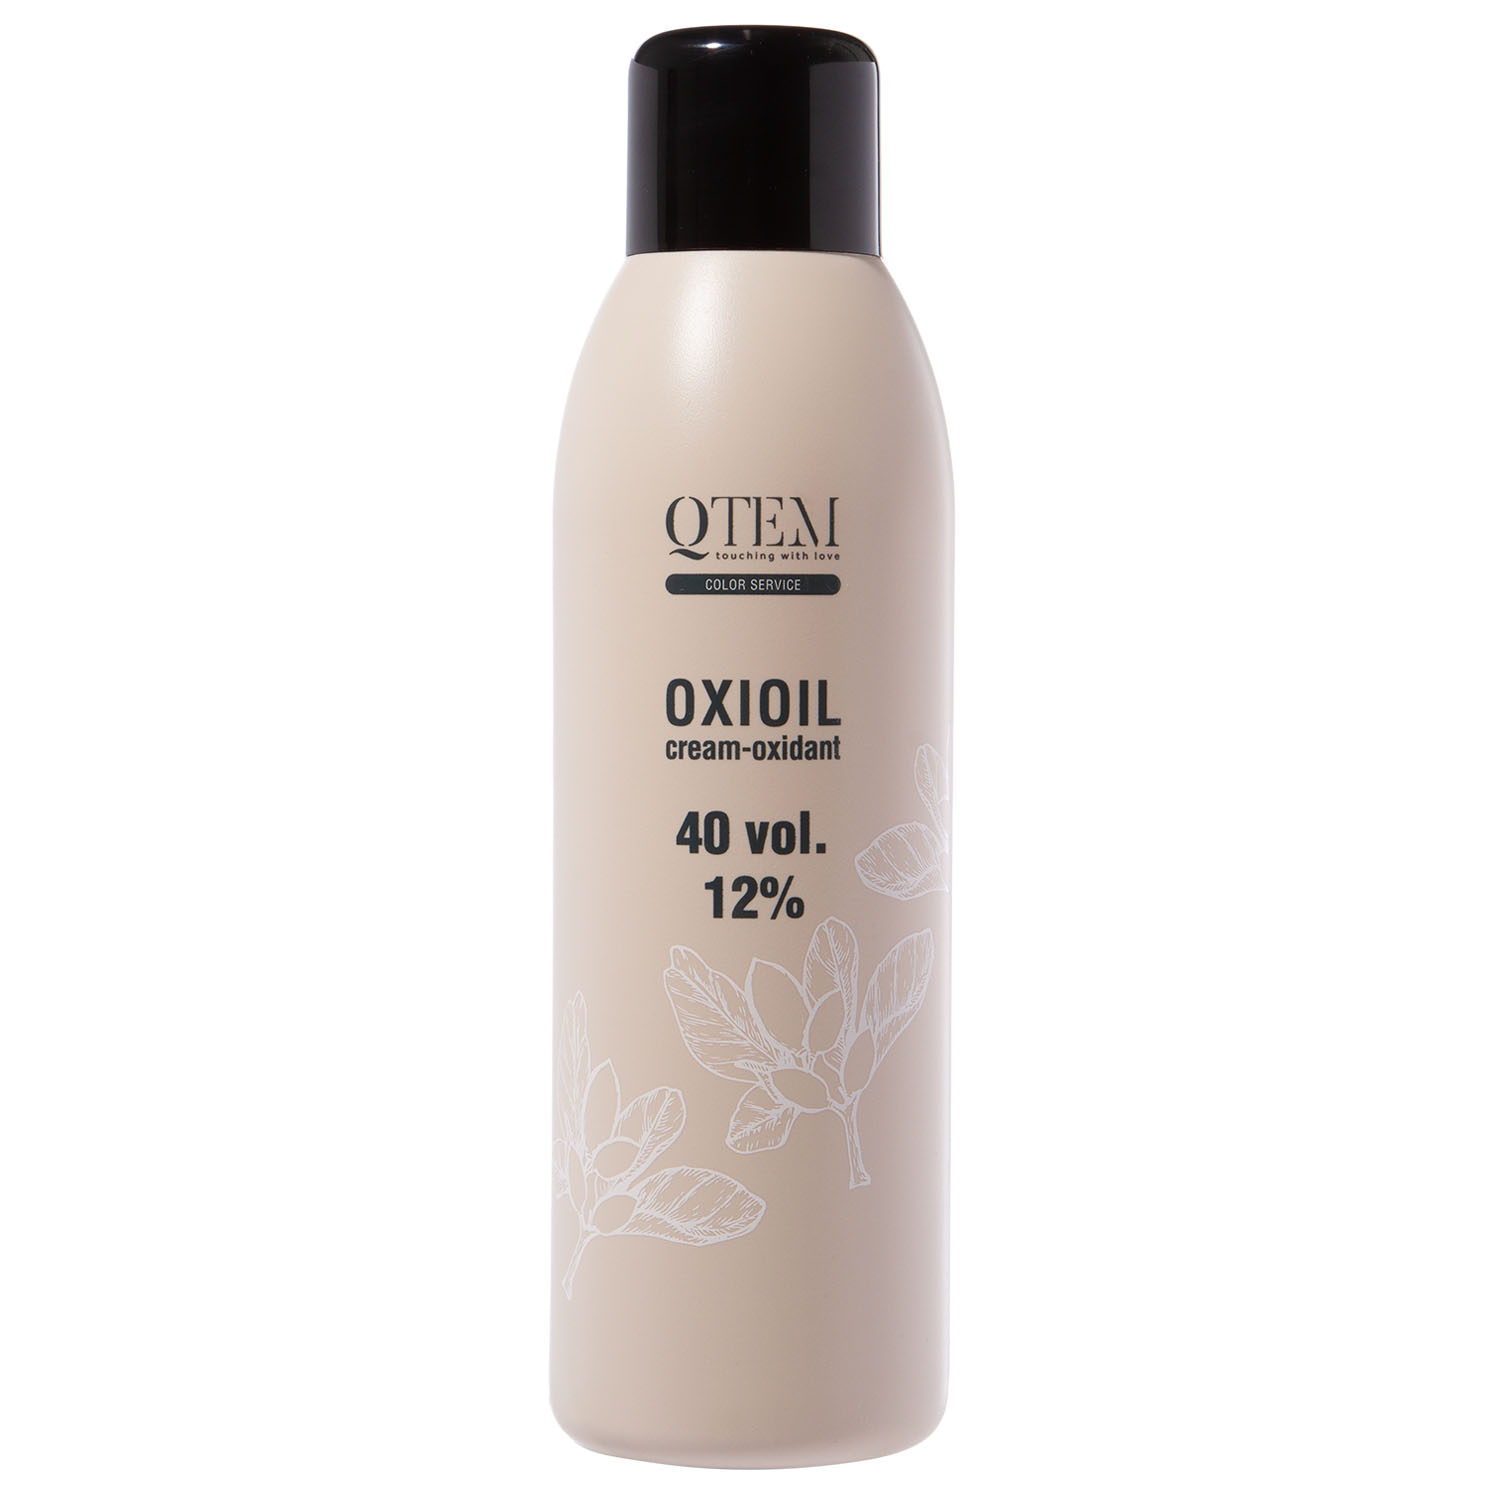 цена Qtem Универсальный крем-оксидант Oxioil 12% (40 Vol.), 1000 мл (Qtem, Color Service)